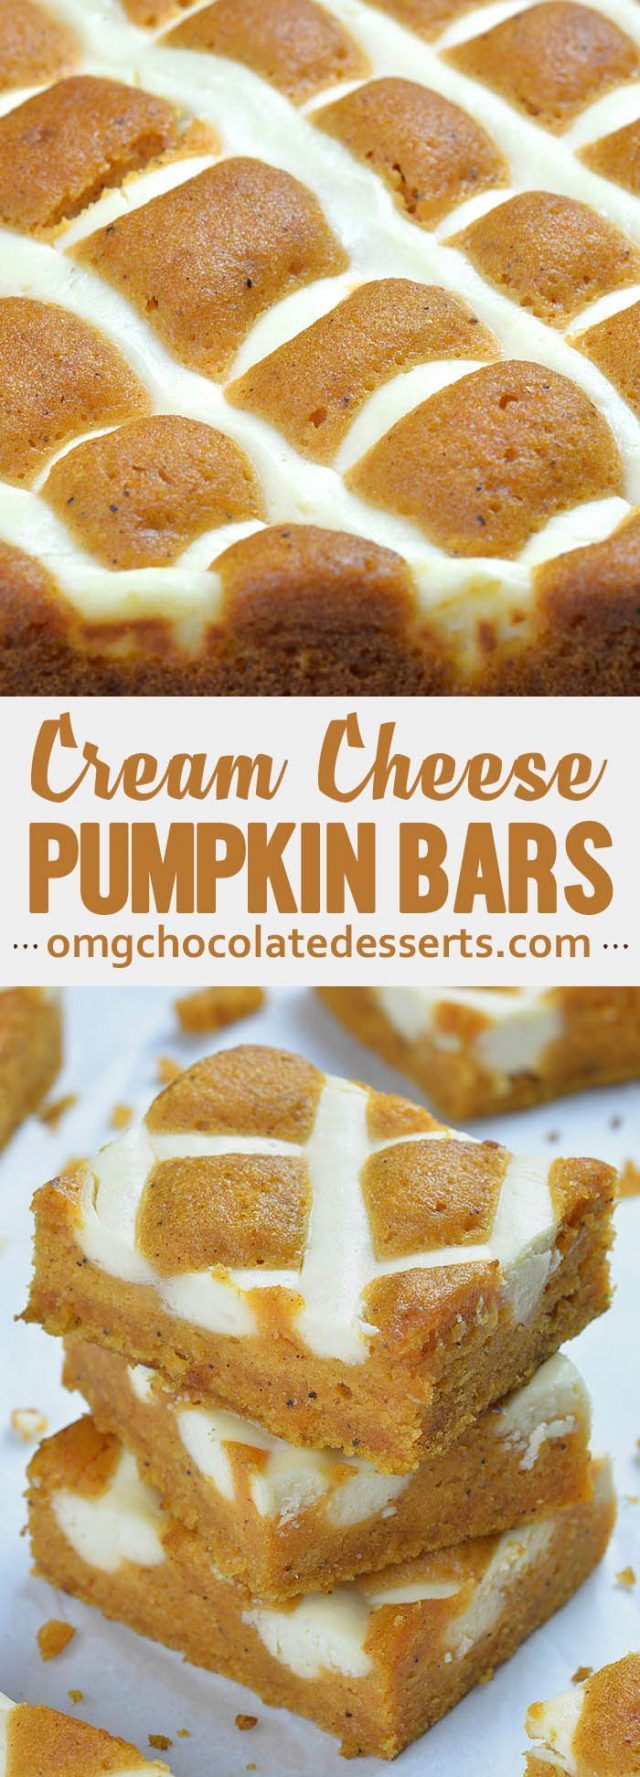 Pumpkin Bars with Cream Cheese -   24 sweet pumpkin recipes
 ideas